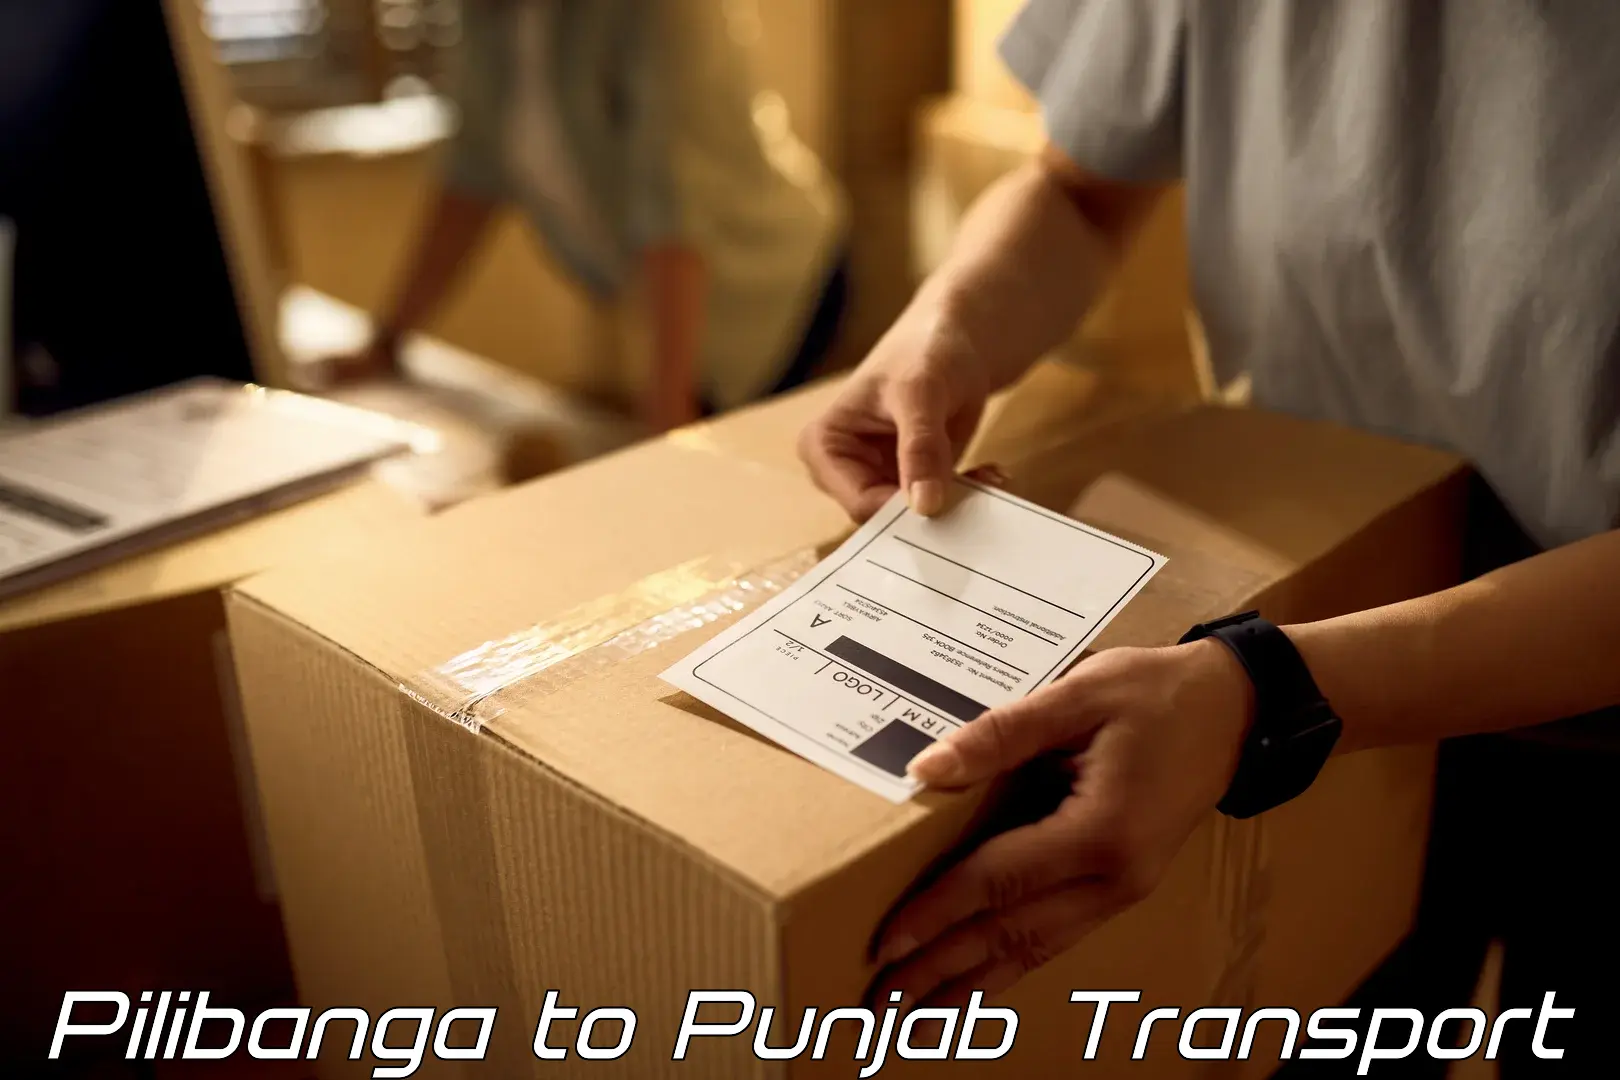 Transport in sharing Pilibanga to Jhunir